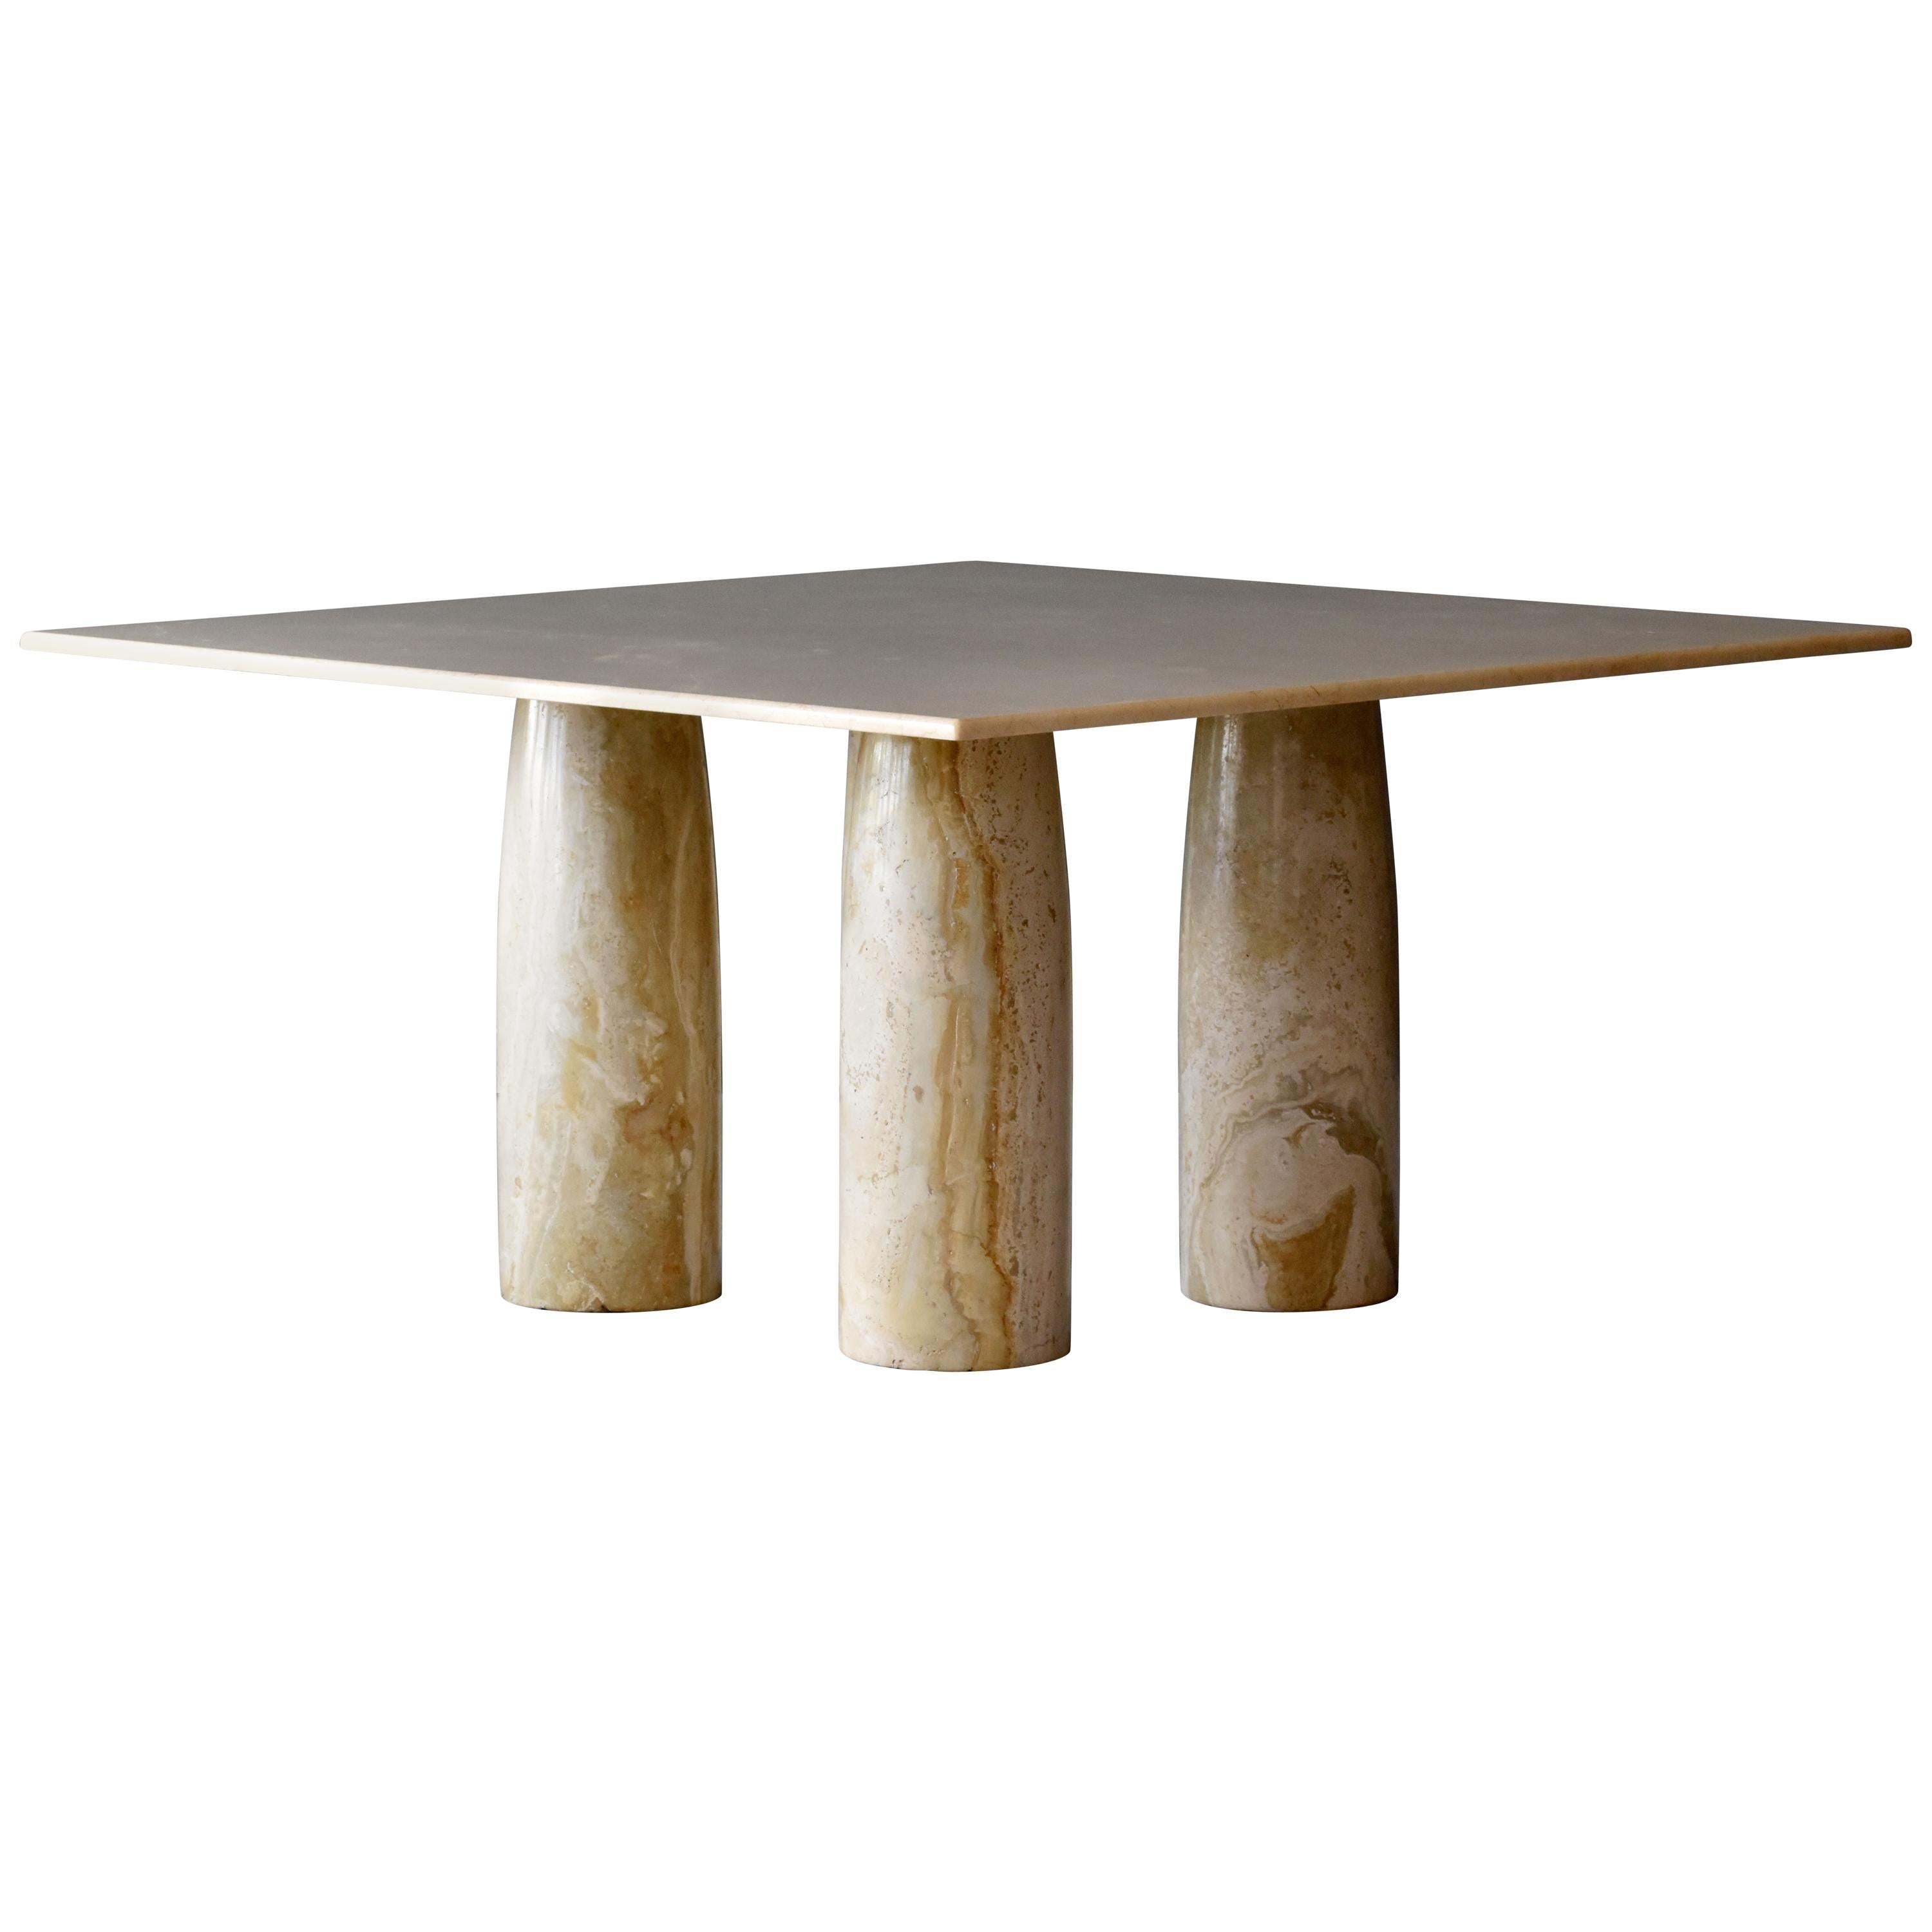 Mario Bellini, "Il Collonato" dining table, marble, Cassina, 1970s